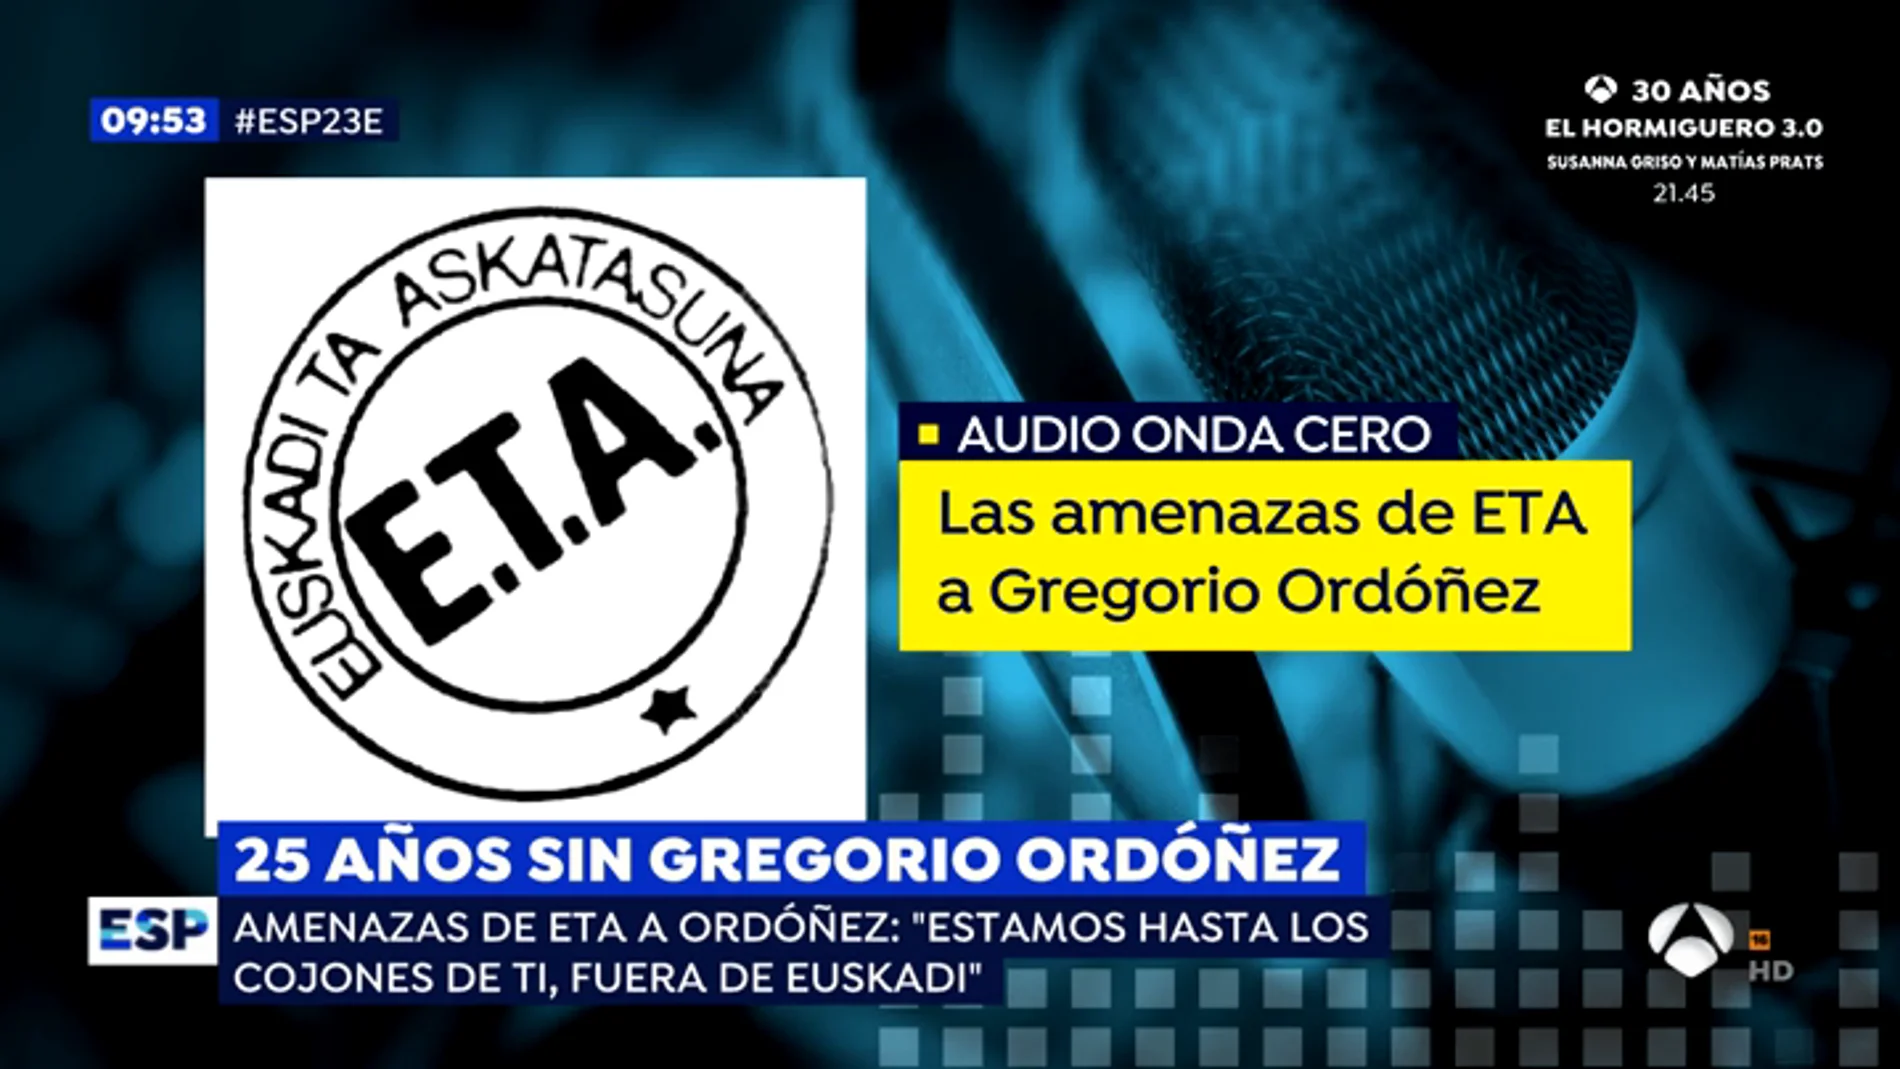 Así es el audio en el que ETA amenazó a Gregorio Ordóñez antes de asesinarlo: "Estamos hasta los cojones de ti"